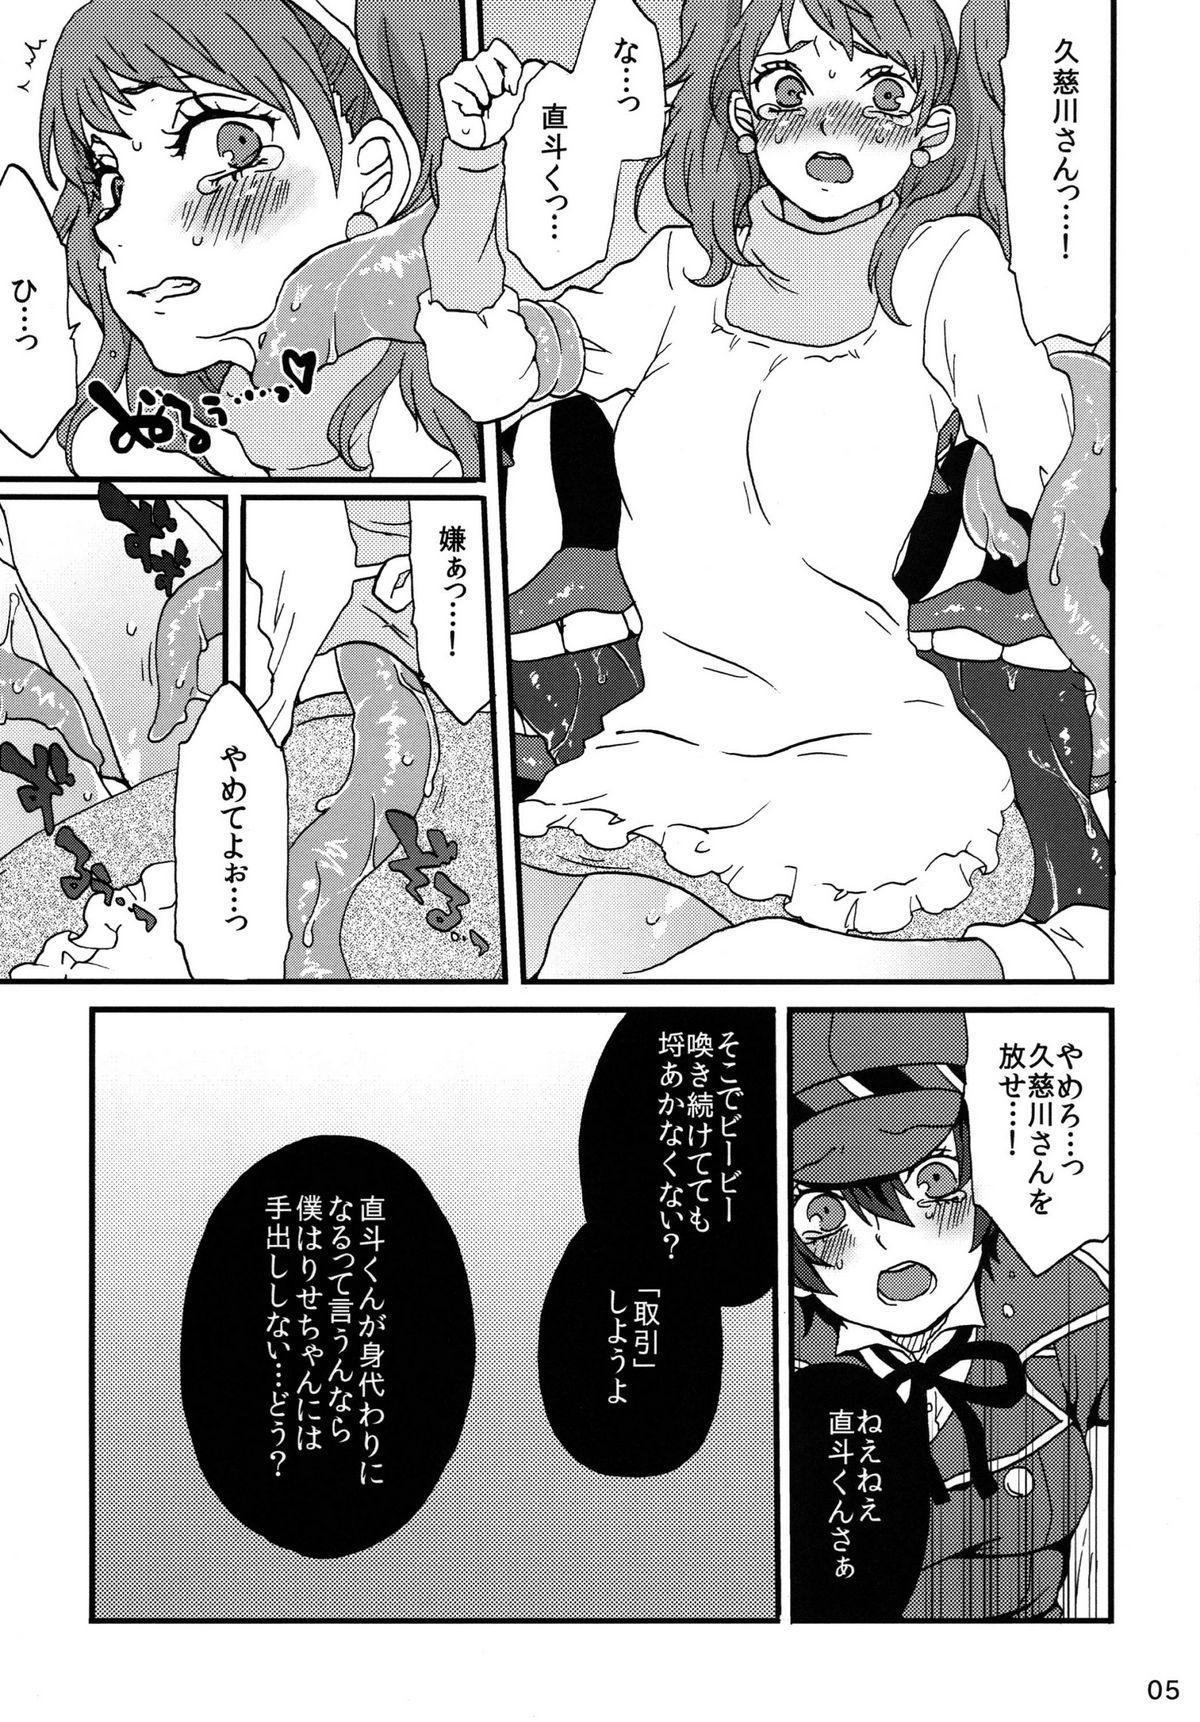 Humiliation Koukishin ha Neko wo Korosu - Persona 4 Step Fantasy - Page 5